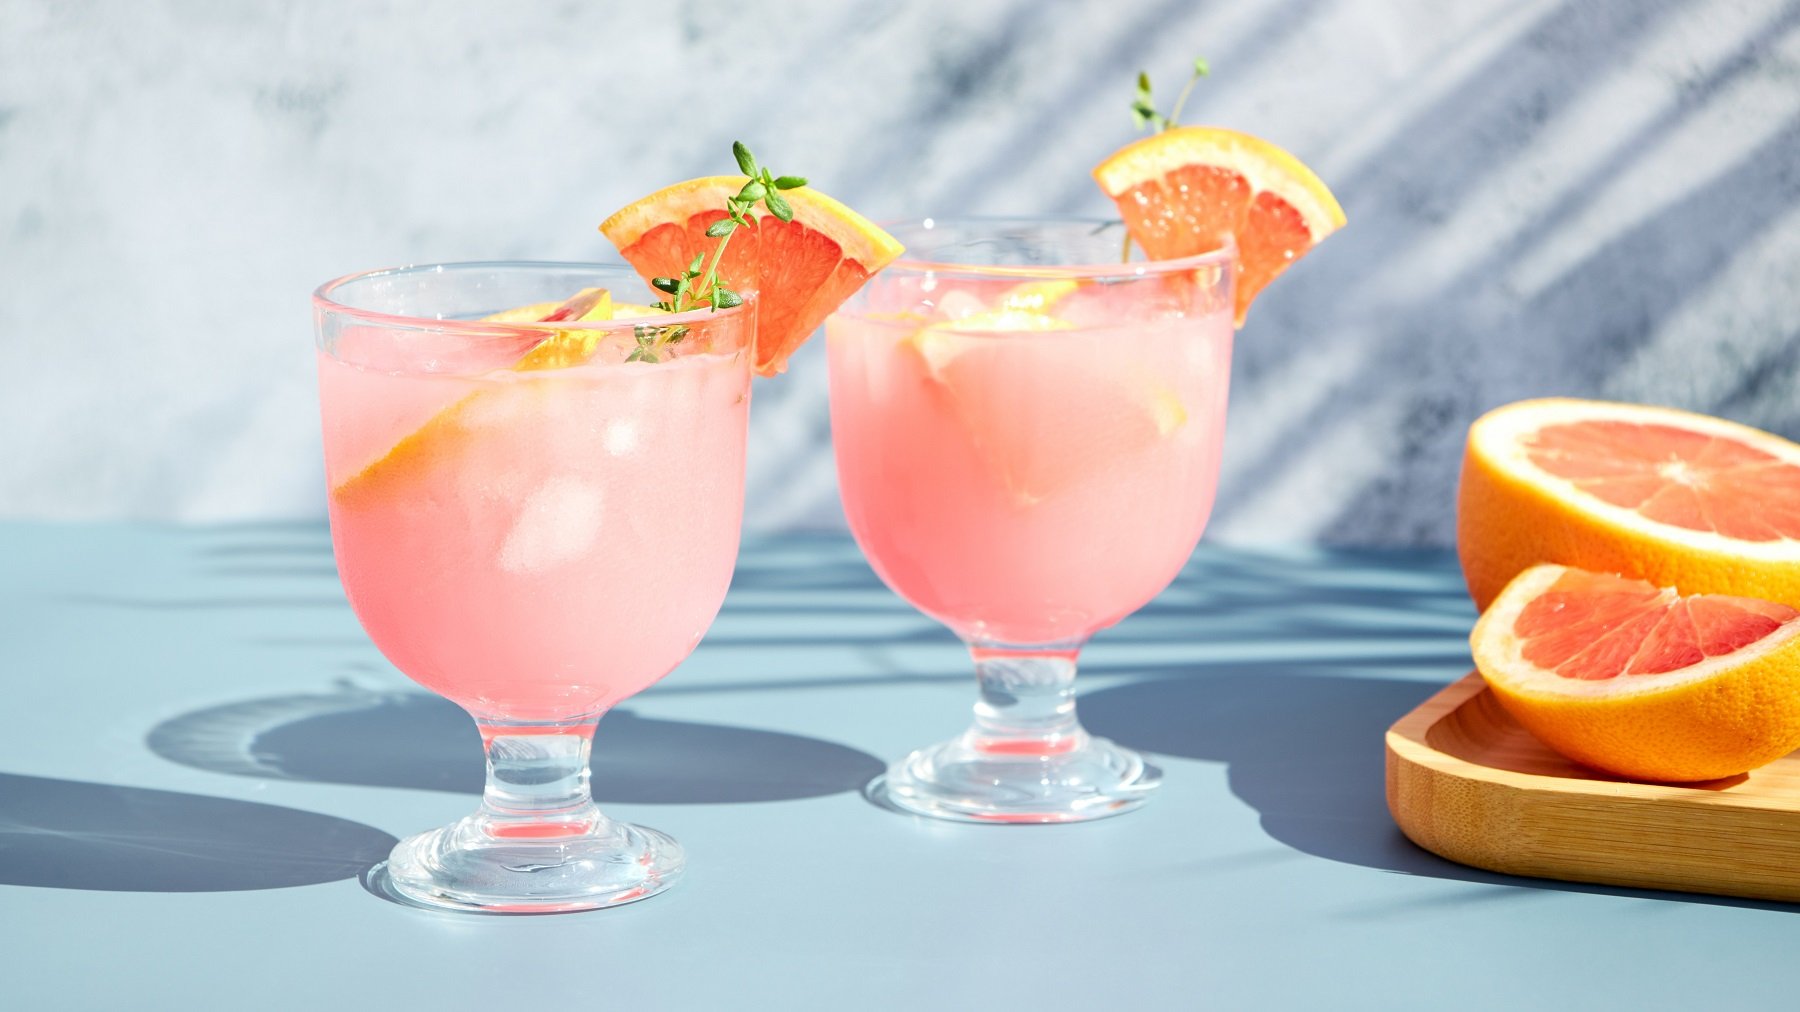 Zwei Gläser mit dem Drink auf hellblauem Unter- und Hintergrund. Rechts daneben angeschnittene Grapefruit auf einem Holzbrett.